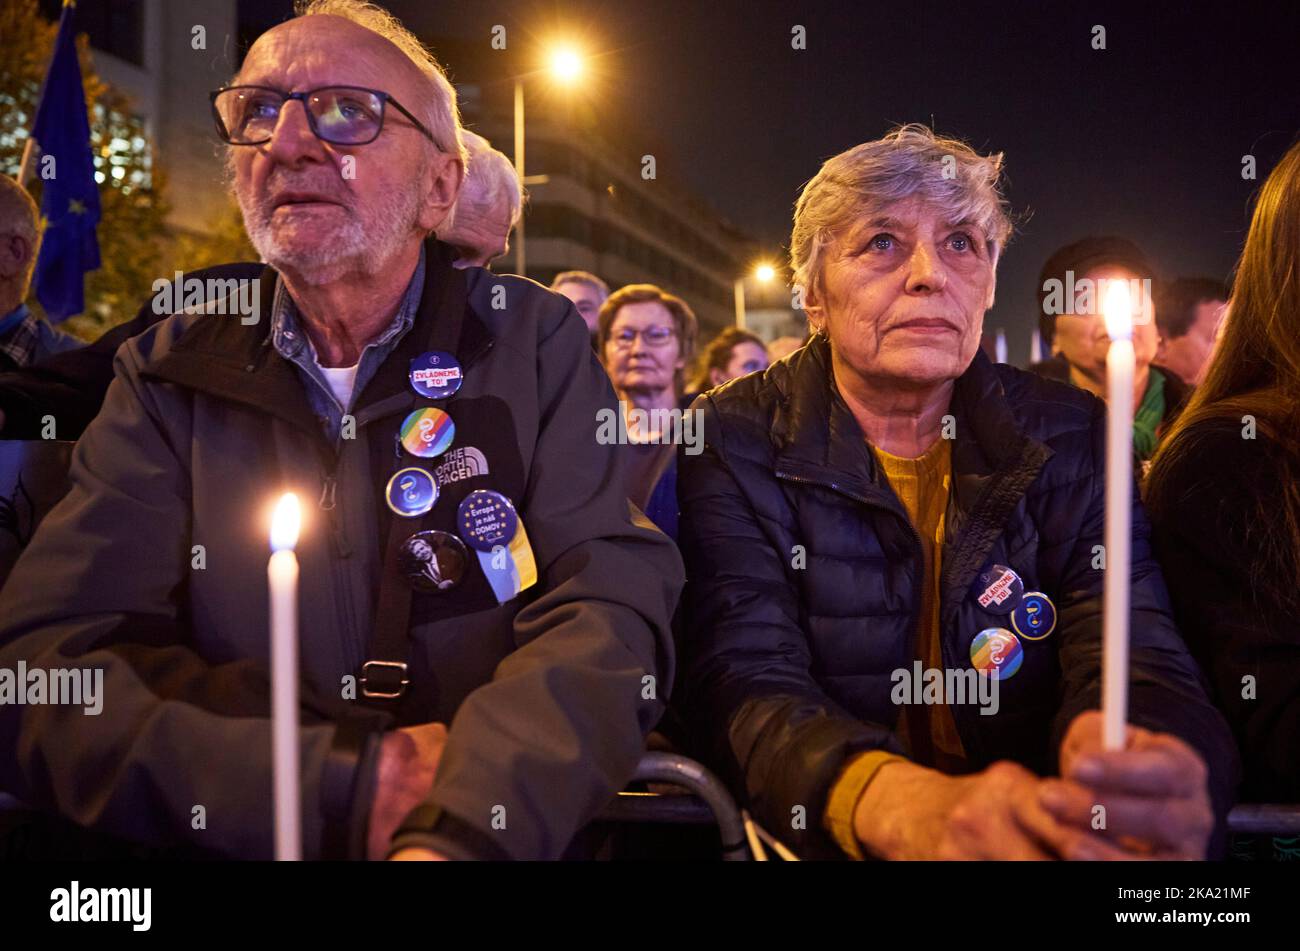 Die Menschen zünden Kerzen für die Seelen der ukrainisch-russischen Kriegsopfer an. Demonstration für die Unterstützung der Ukraine in der Tschechischen Republik statt, Prag 30.10.2022 Demonstration auf dem Wenzelsplatz in Prag versuchen, das Selbstwertgefühl der tschechischen Bürger in einem starken Europa und seine Opposition gegen Russland zu erhöhen. Mehr als 60 Tausend Menschen kamen, um ihre Unterstützung für den ukrainischen Freiheitskampf zu zeigen. Stockfoto